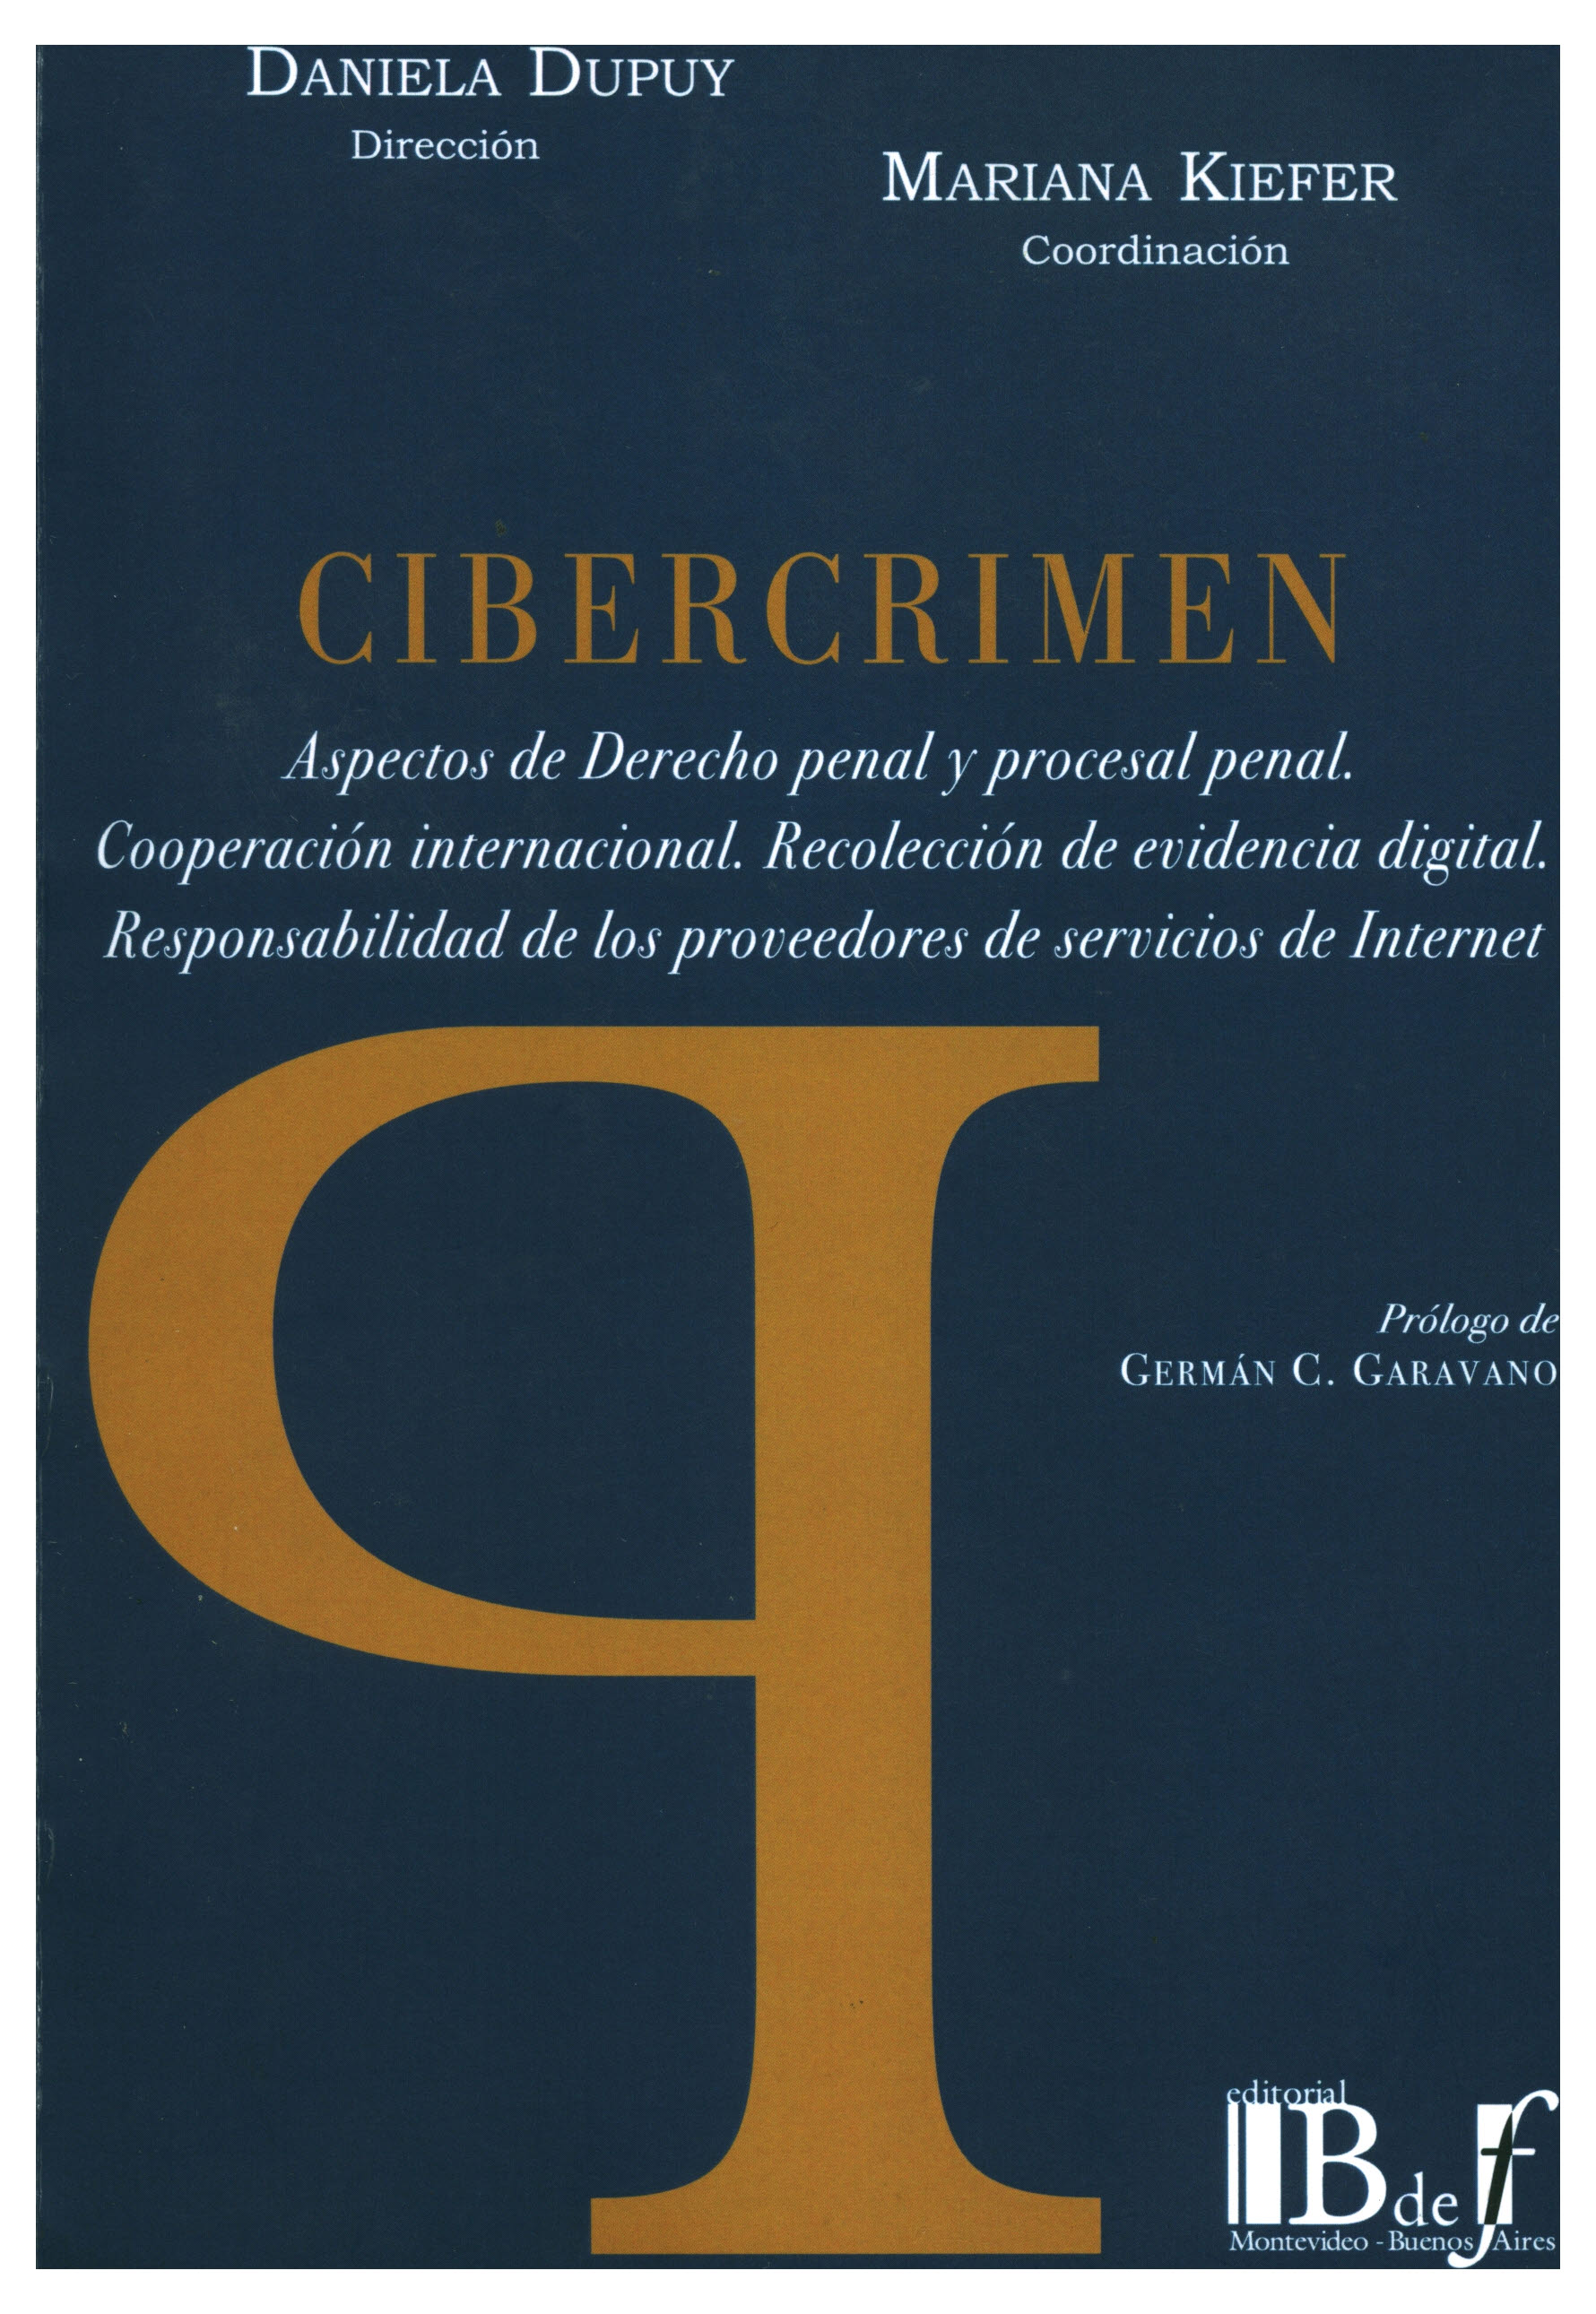 Cibercrimen. aspectos de derecho penal y procesal penal. Cooperación internacional. Recolección de evidencia digital. responsabilidad de los proveedores de internet.